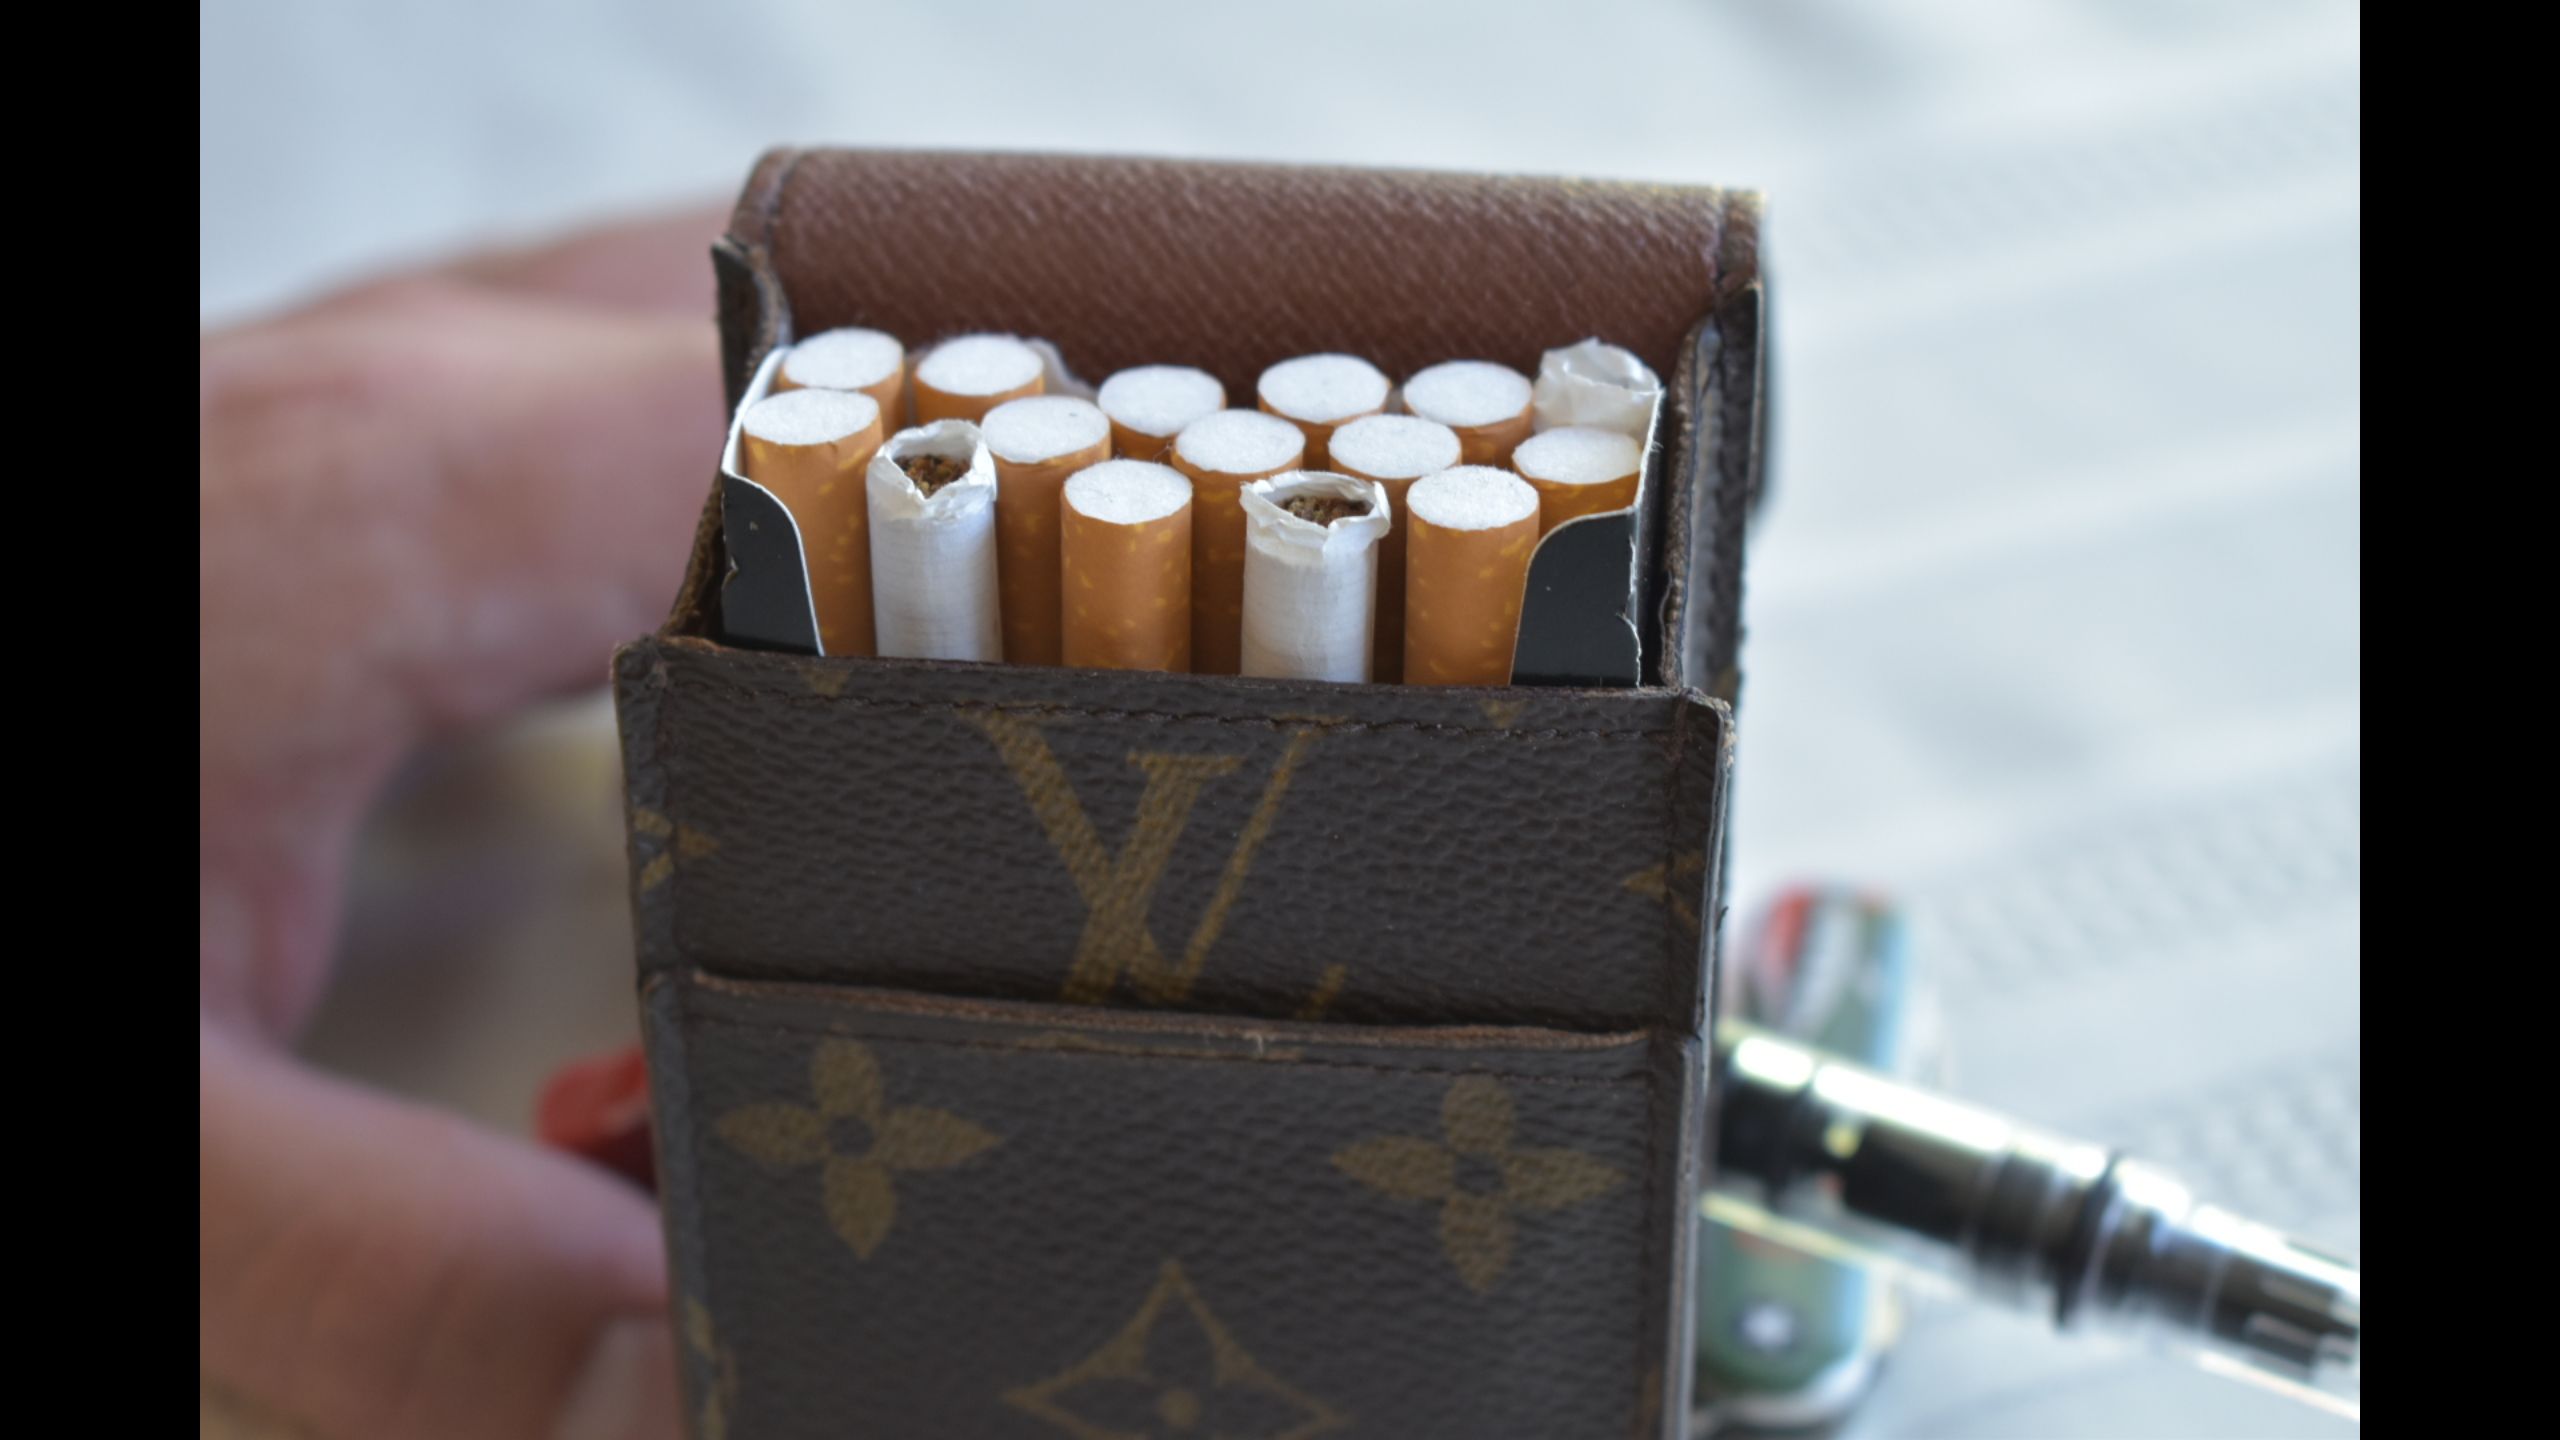 Louis Vuitton Monogram Cigarette Case Monogram Etui Holder 15ALV102